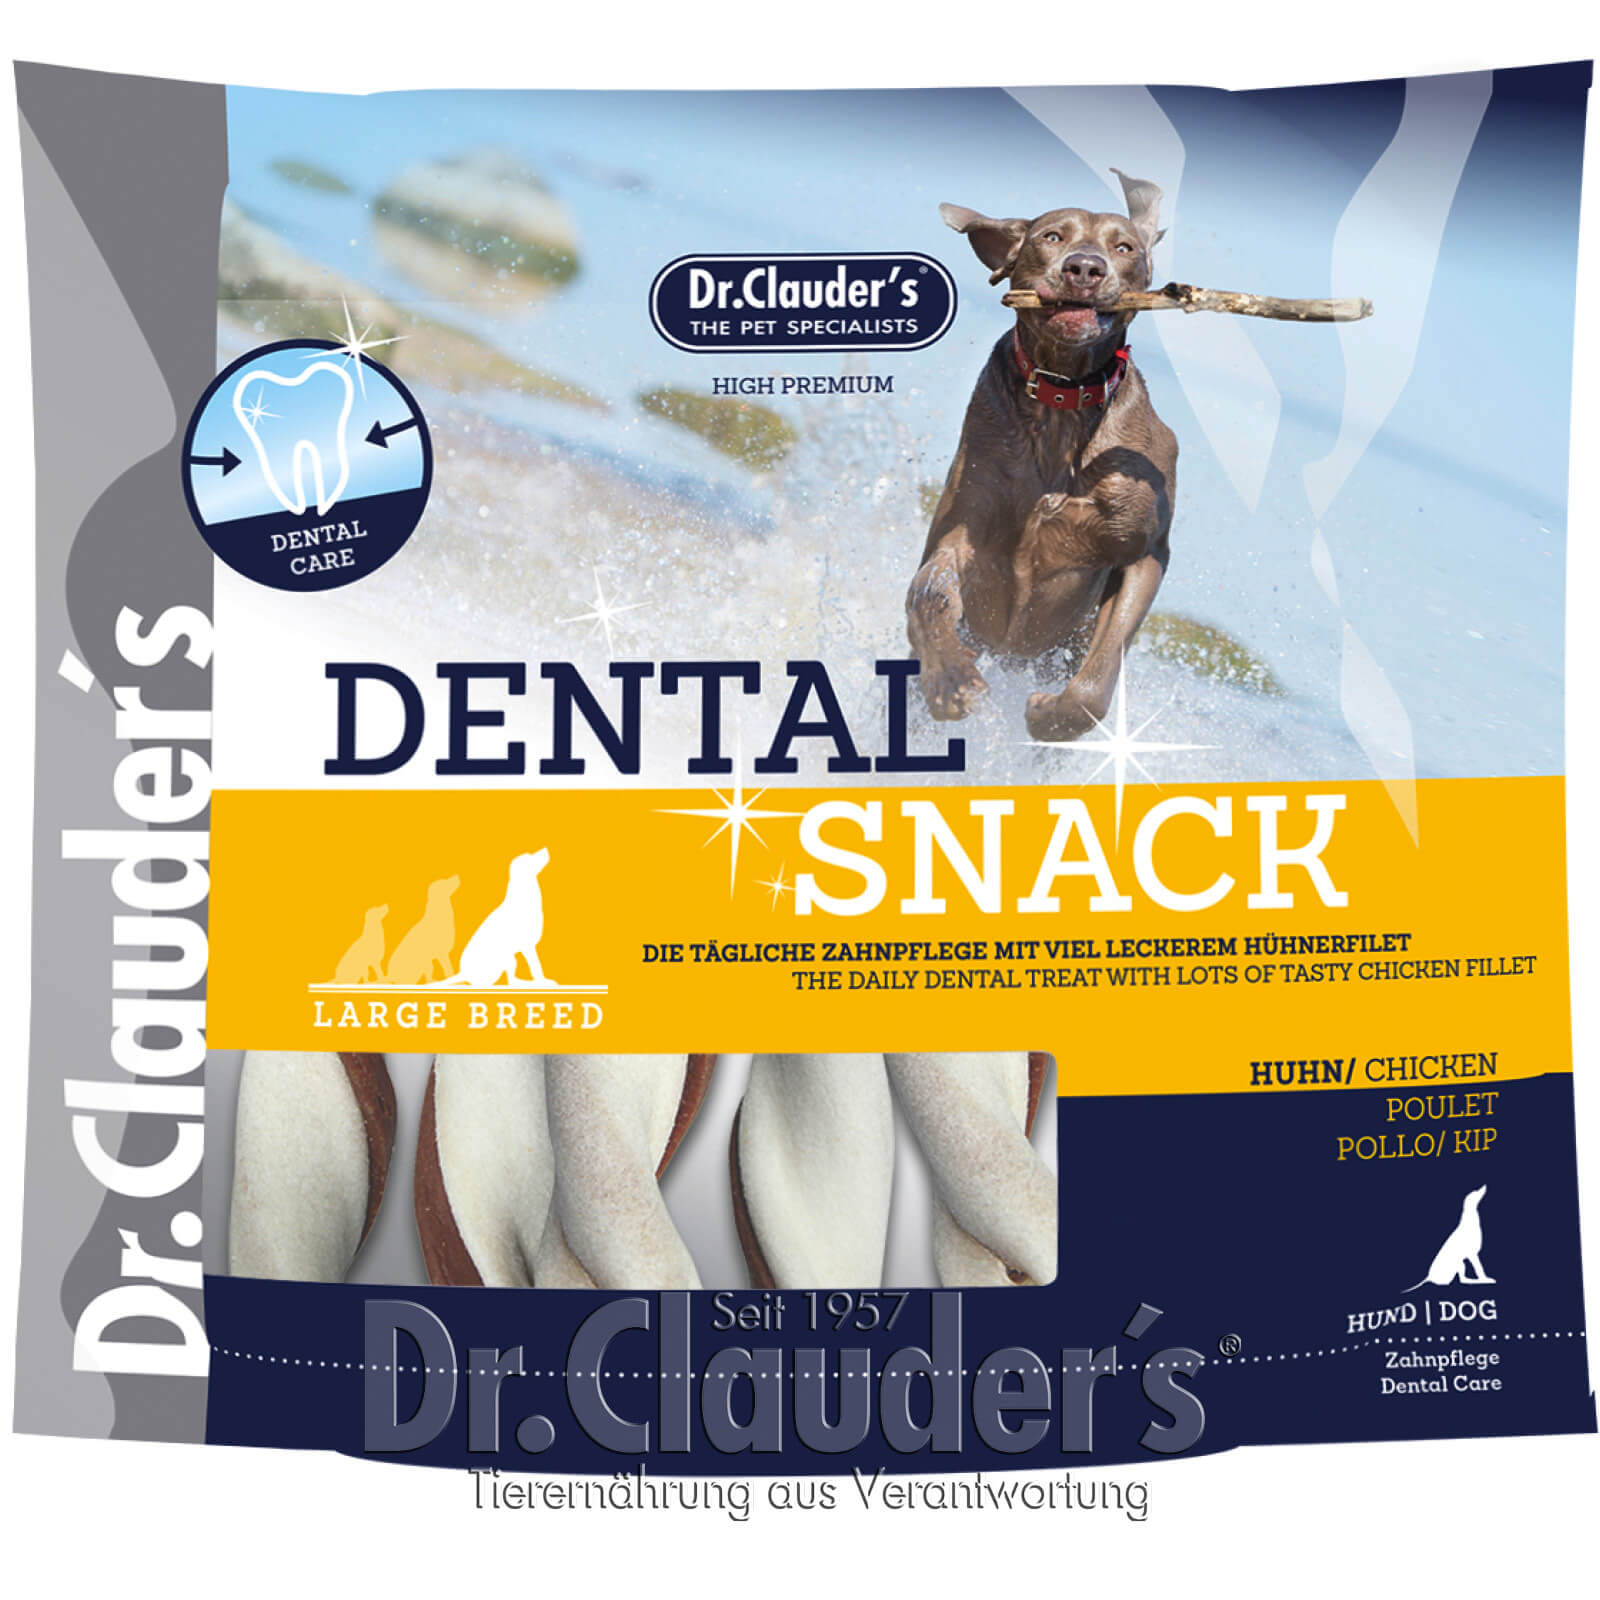 Dr Clauder Dental Hunde Snack Huhn Large Breed 500g